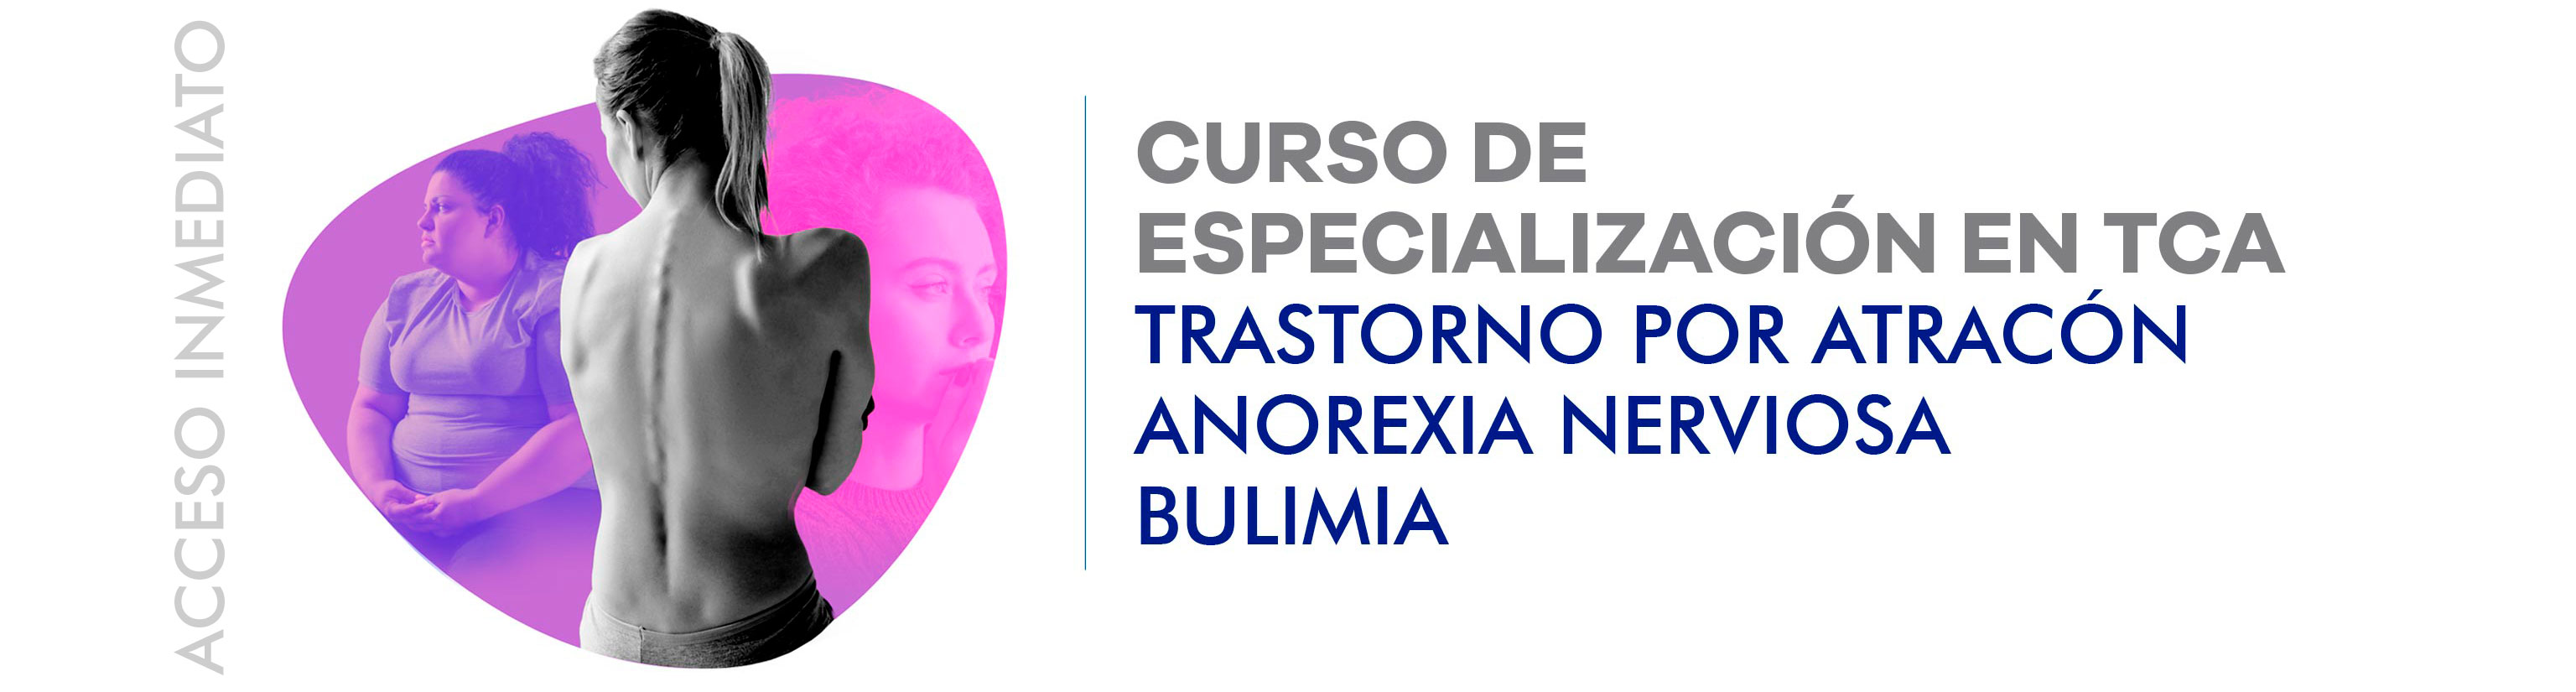 Curso de Especialización en TCA: Anorexia, Bulimia y Trastorno por Atracón